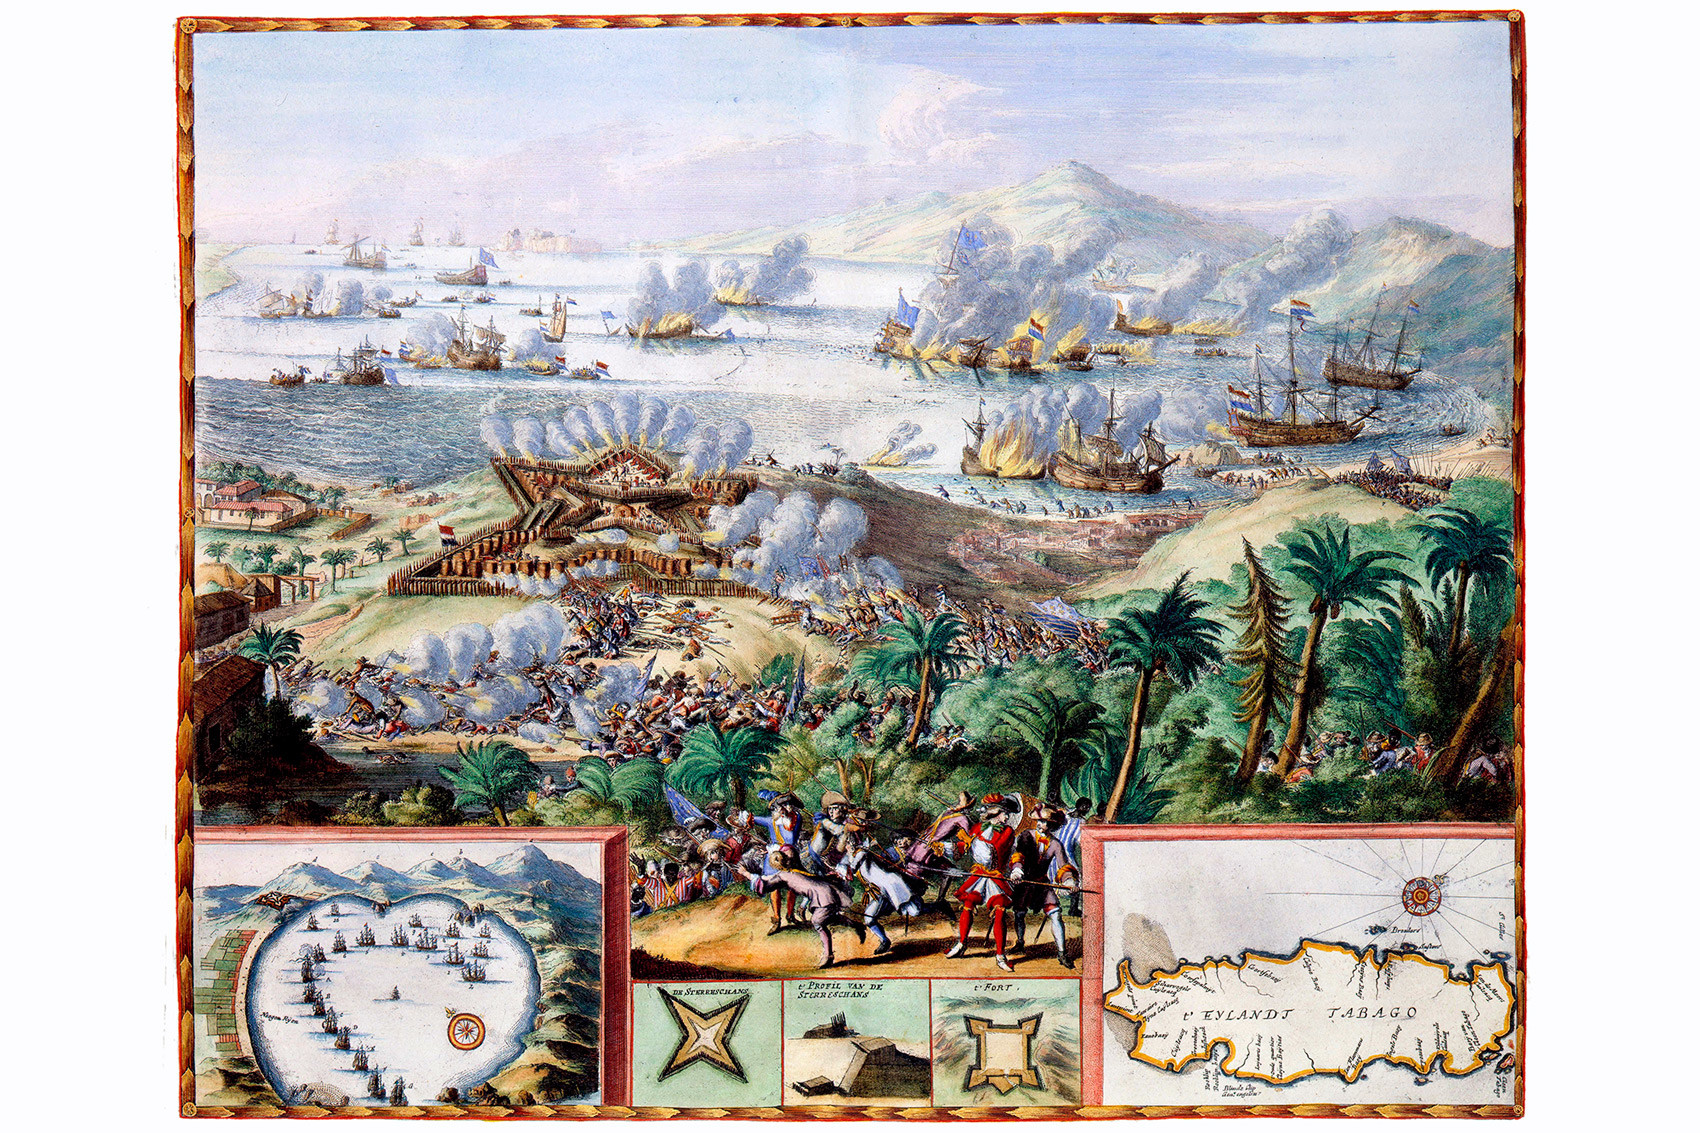 Tobago 1677. Von Romeyn de Hooghe, Amsterdam 1677